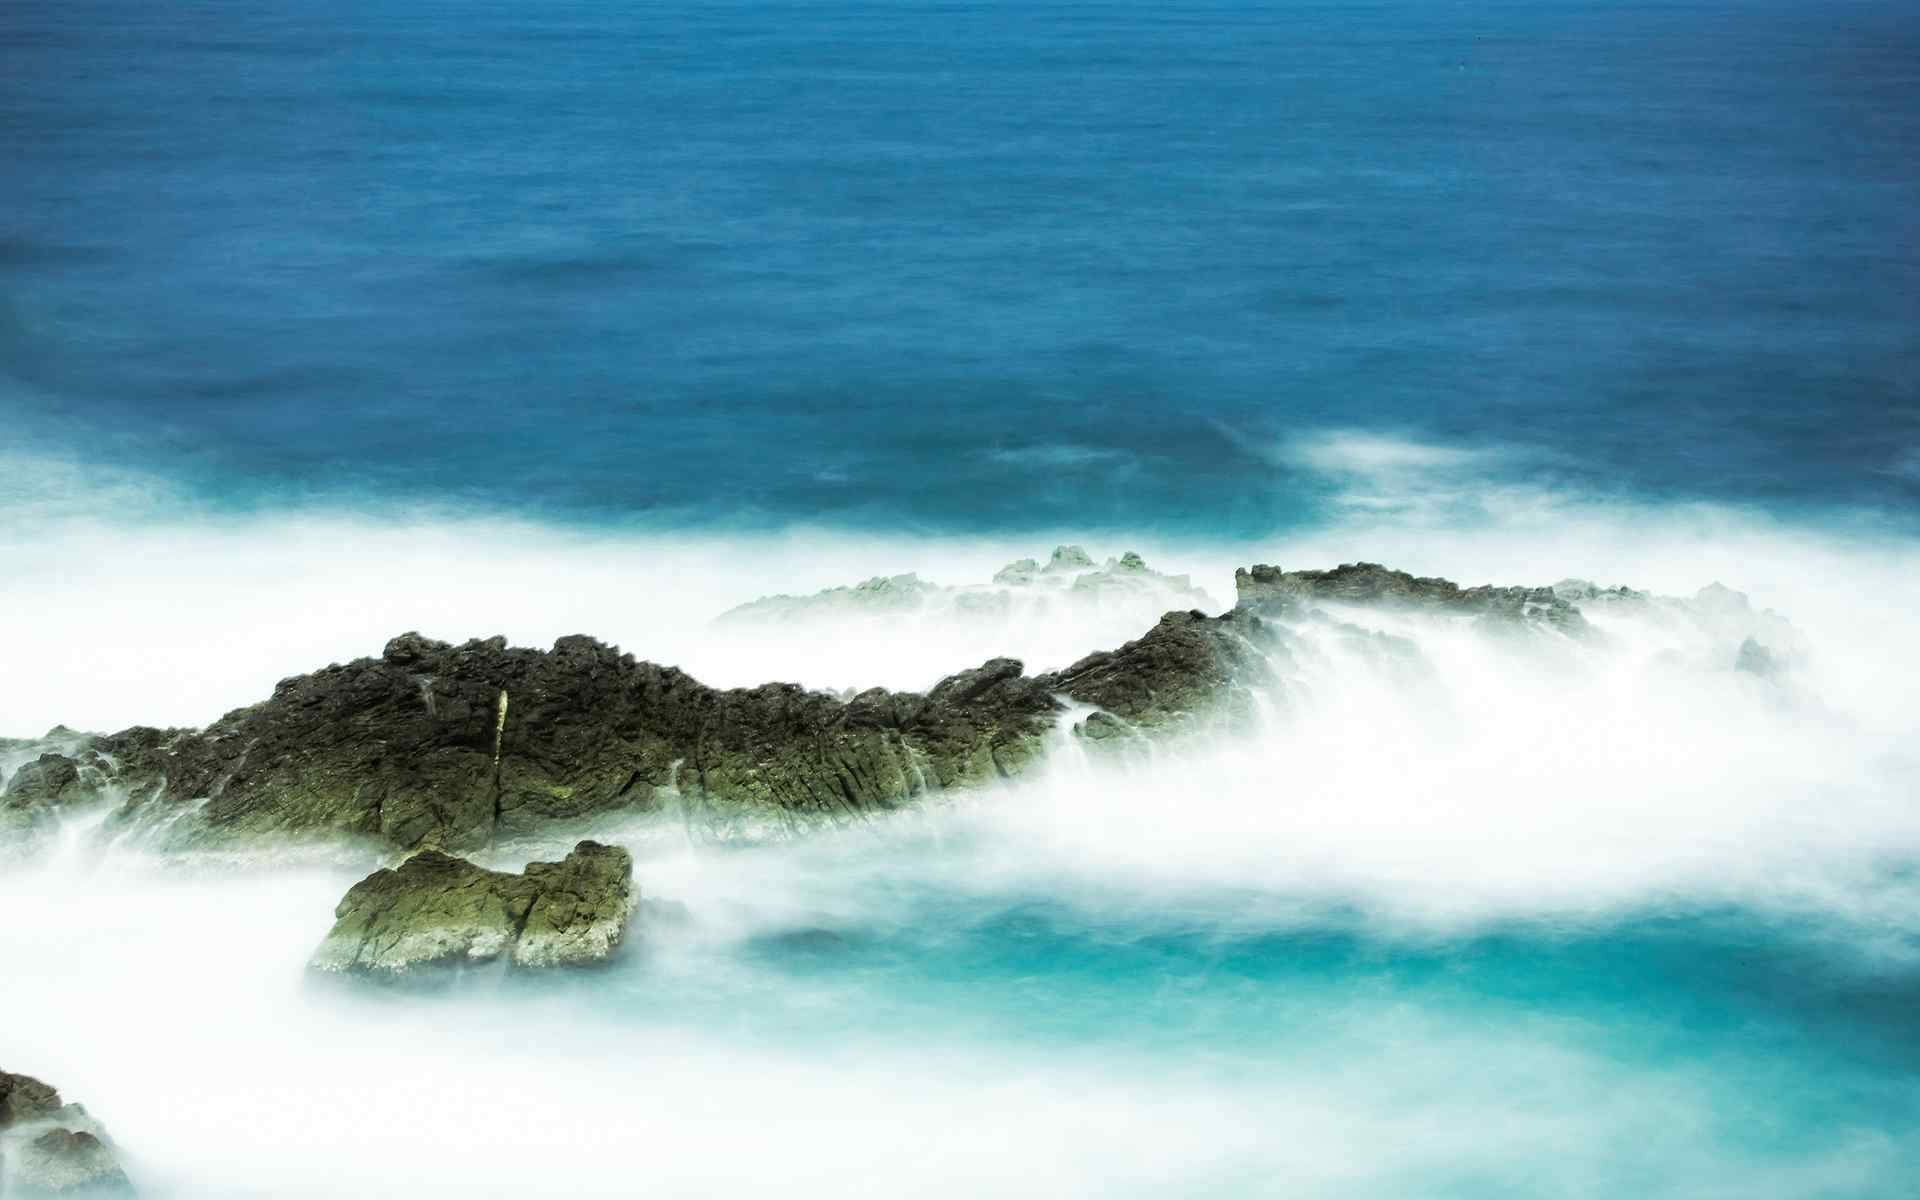 视觉震撼撞击礁石的海浪桌面风景壁纸 十一辑